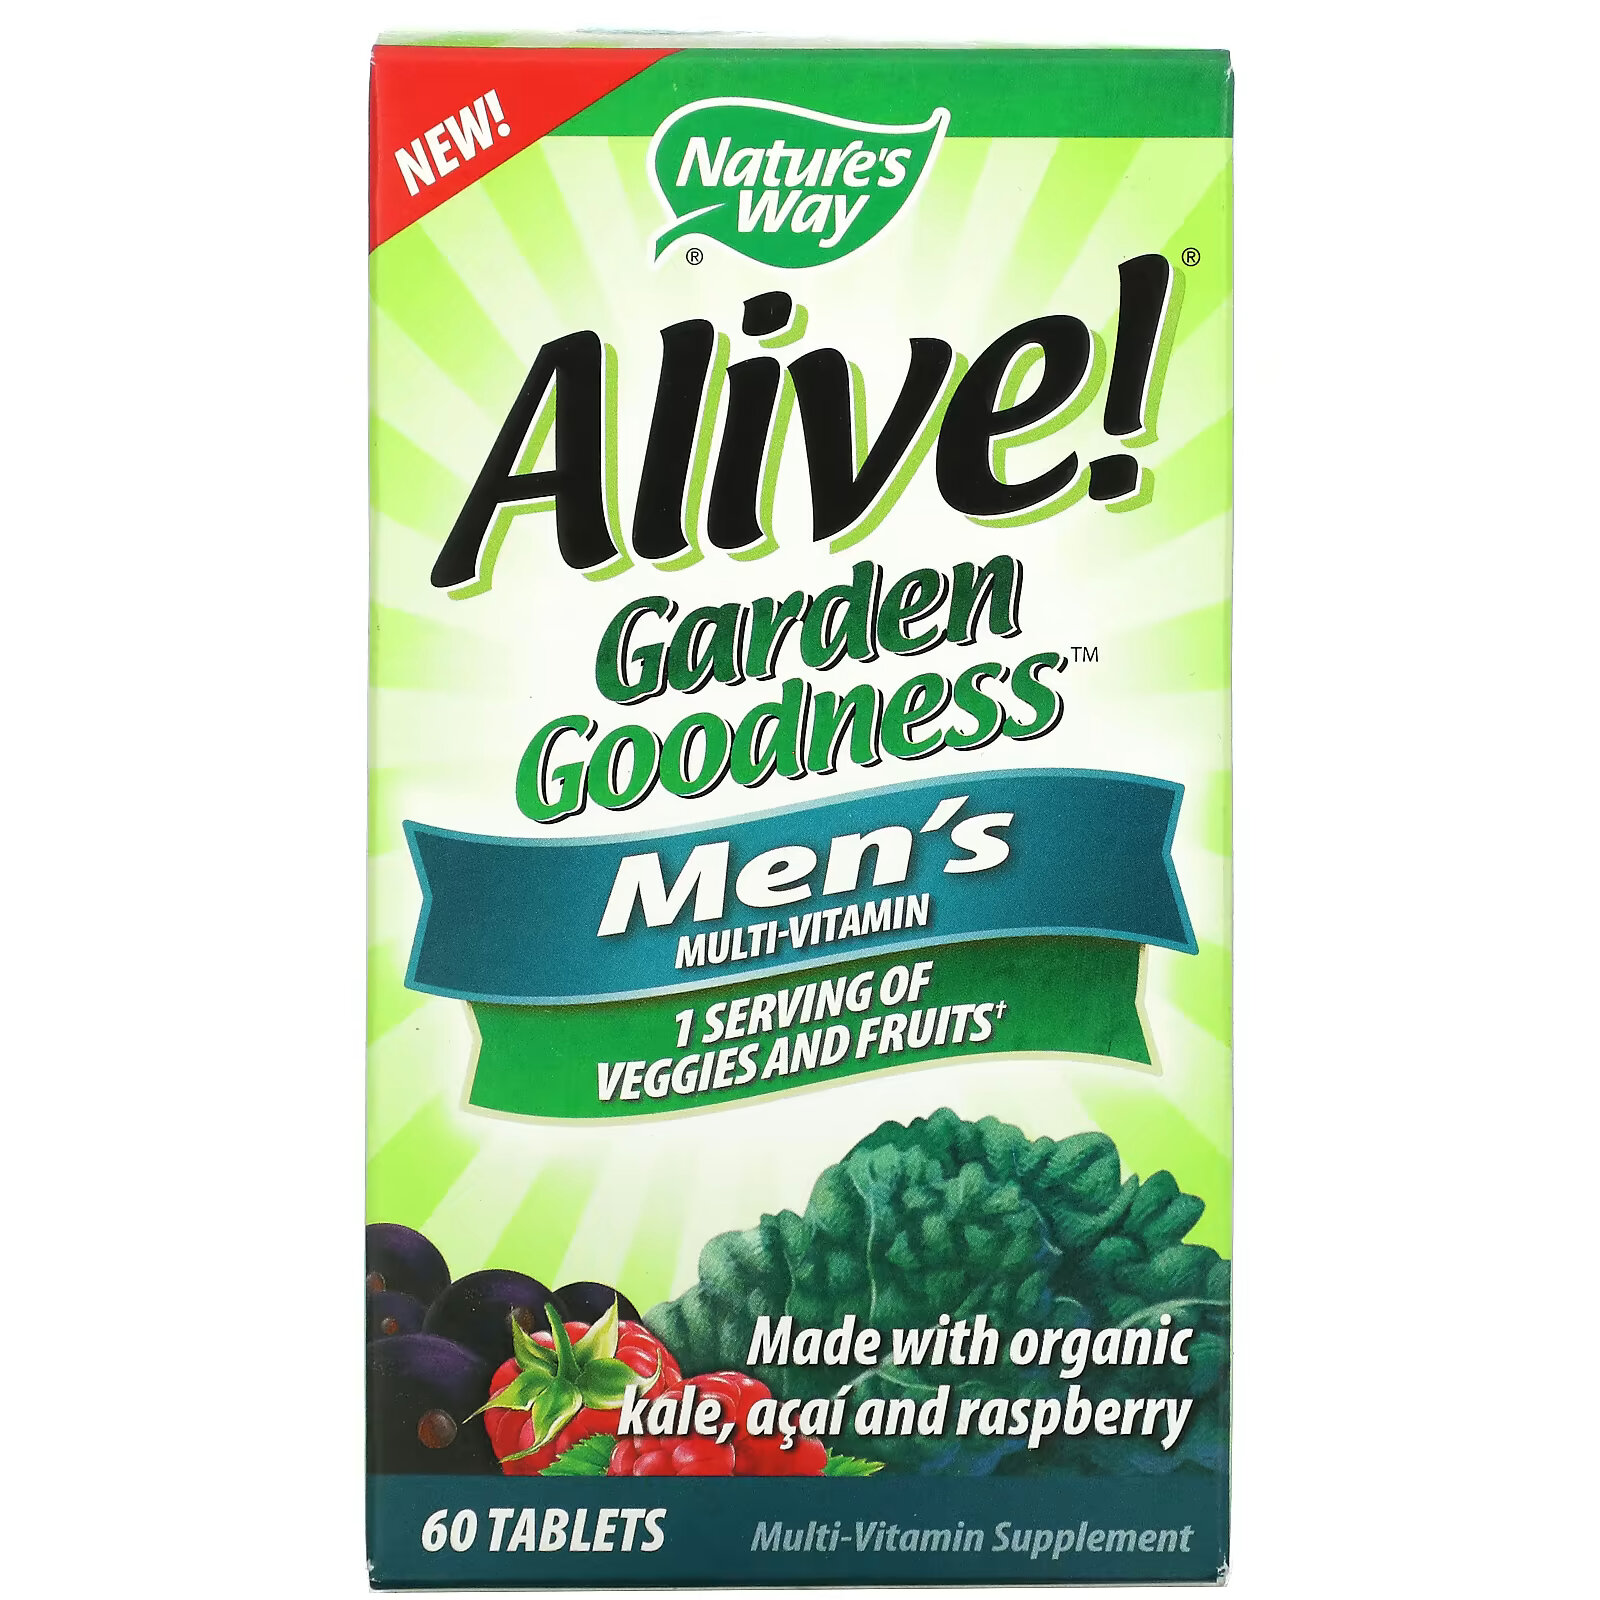 Мультивитамины Nature's Way Alive! Garden Goodness для мужчин, 60 таблеток nature s way alive суперэффективные комплексные мультивитамины для мужчин 60 таблеток